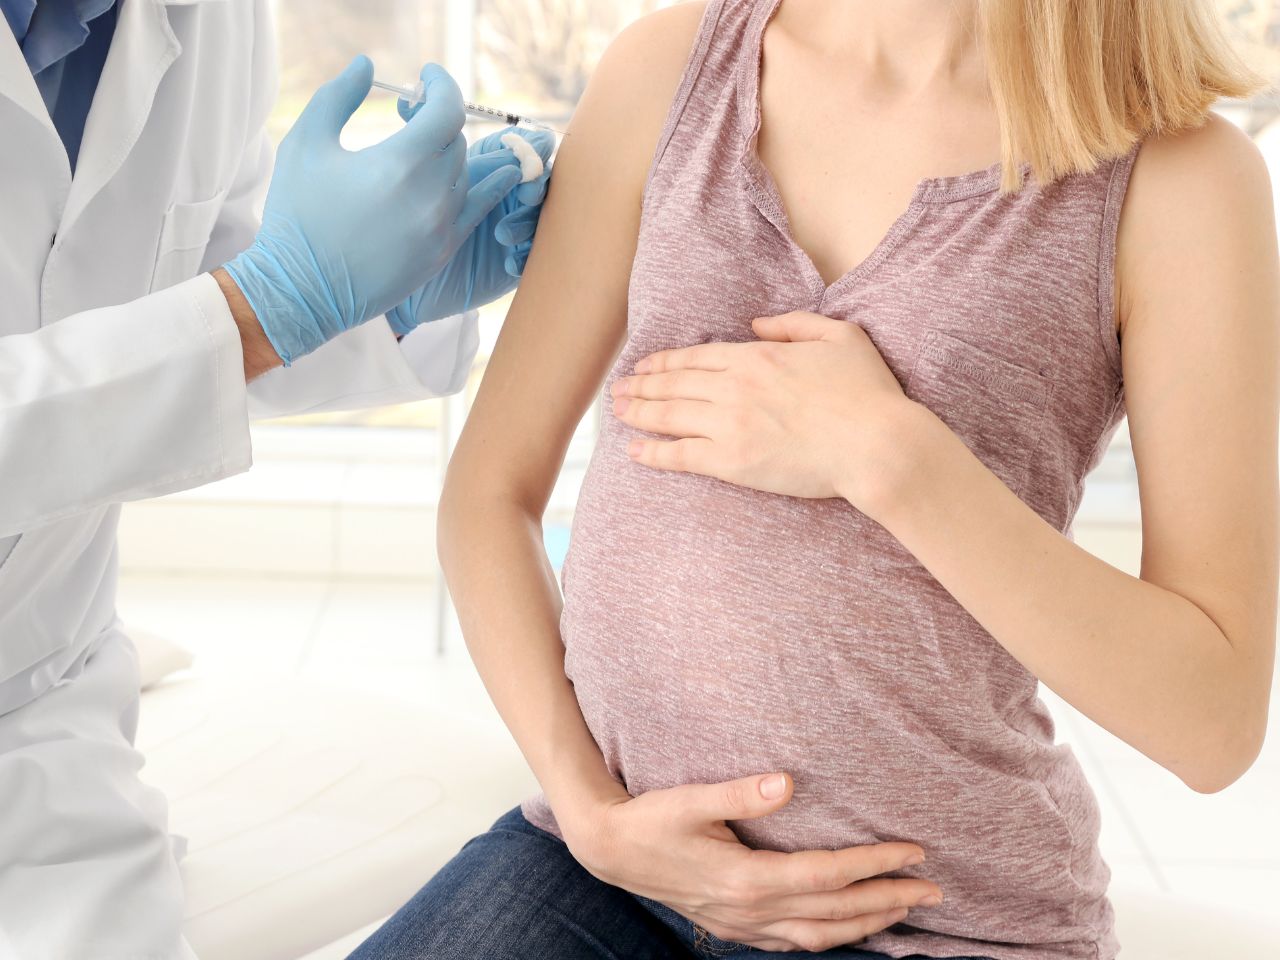 Vaccinarsi in gravidanza, tra questione delicata e informazione adeguata